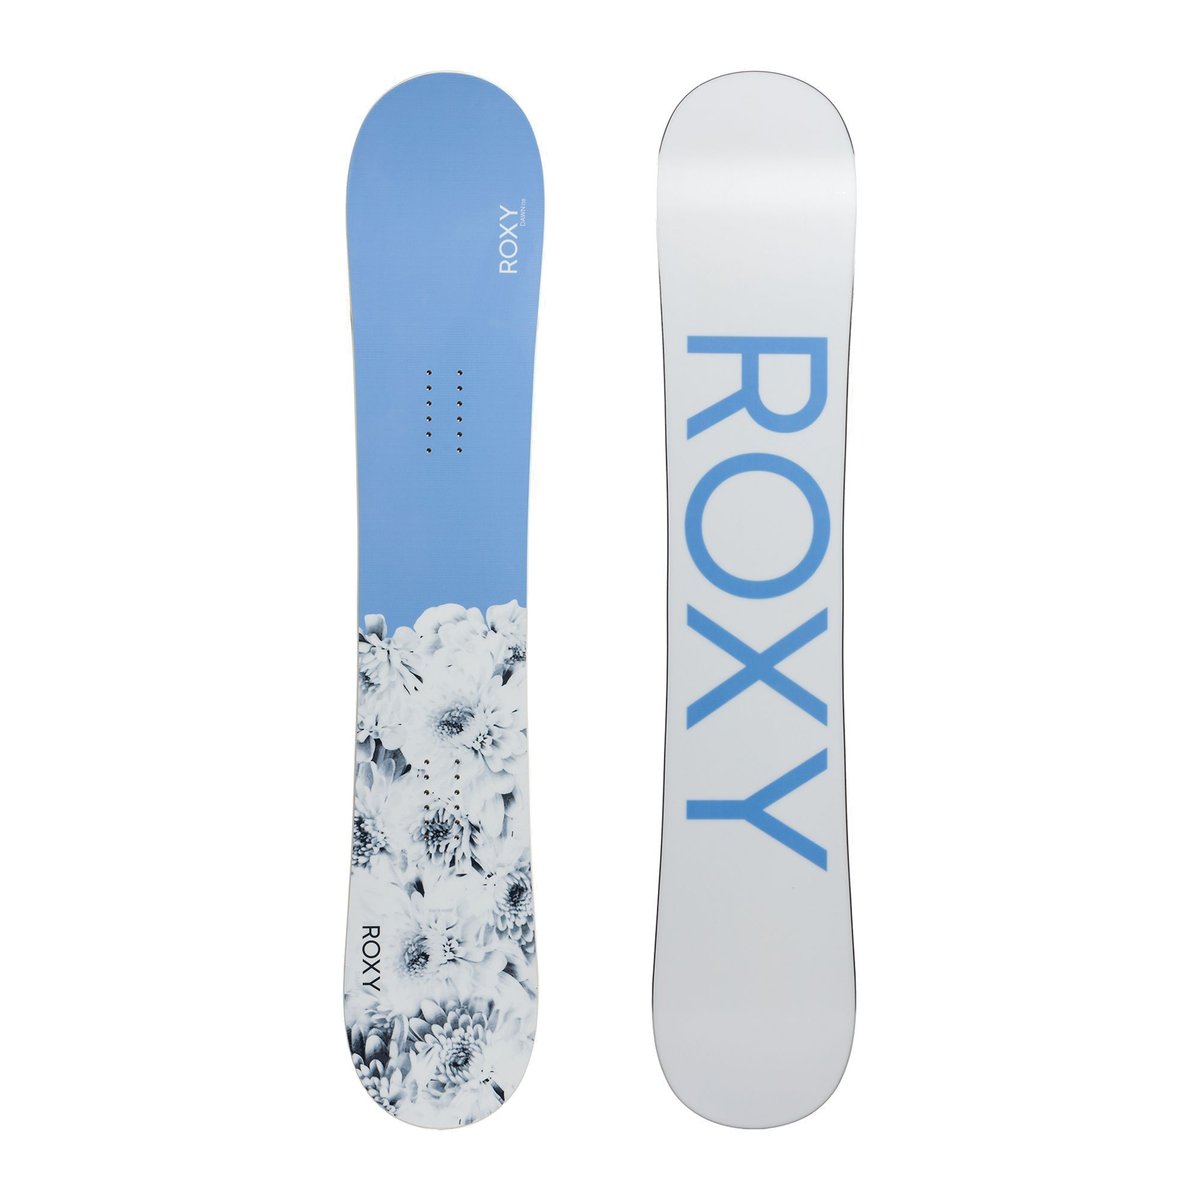 Deska snowboardowa damska Roxy Dawn fioletowo-biała 22SN062